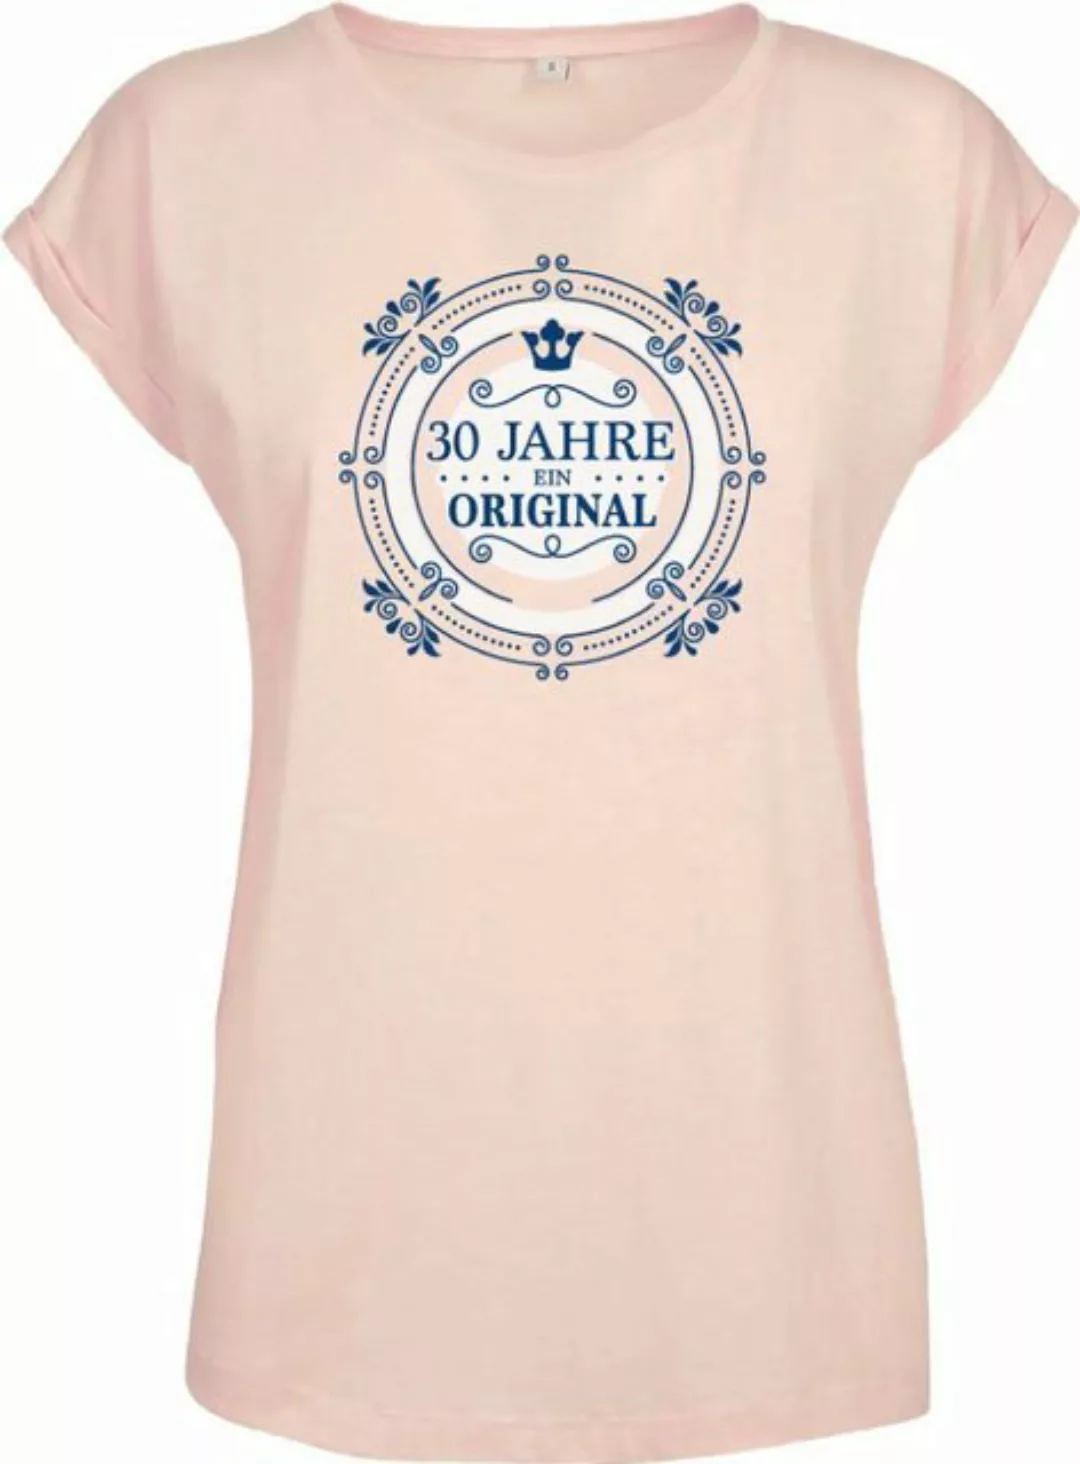 Baddery Print-Shirt Geburtstagsgeschenk für Frauen: "30 Jahre Ein Original" günstig online kaufen